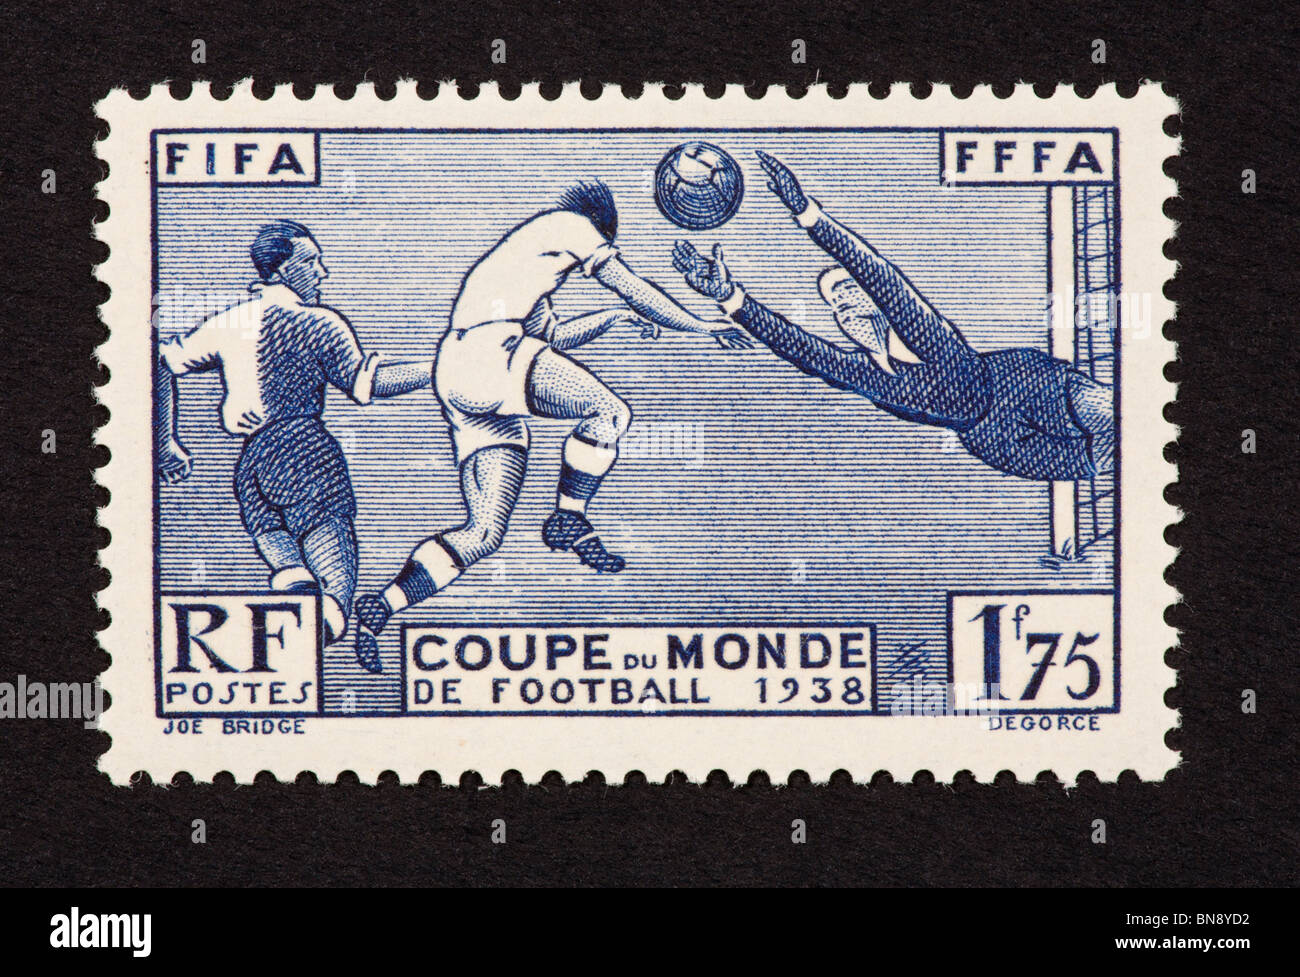 Timbre-poste de France illustrant la Coupe du Monde de Football 1938. Banque D'Images